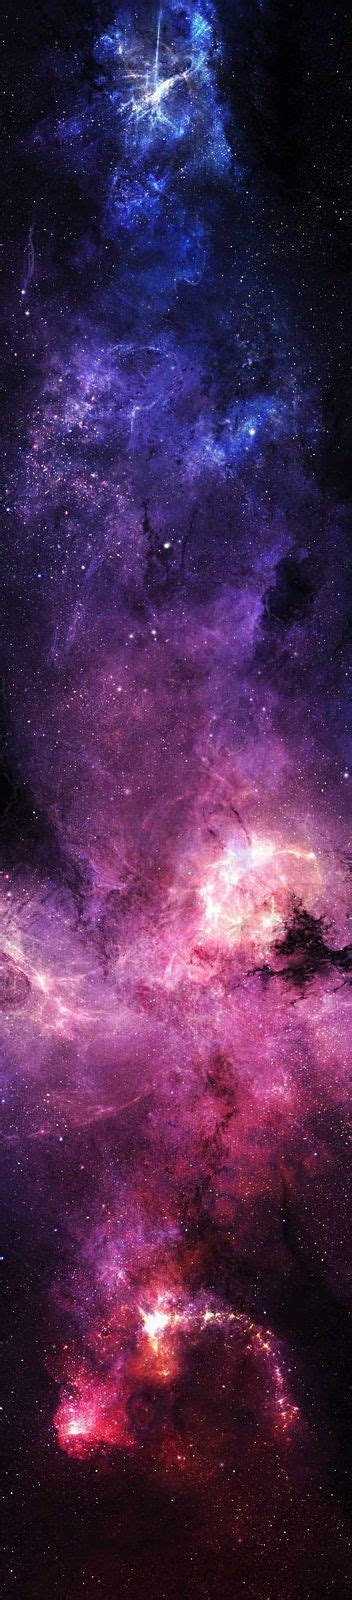 Beautiful Nebula Nebula Astronomy Galaxy Wallpaper